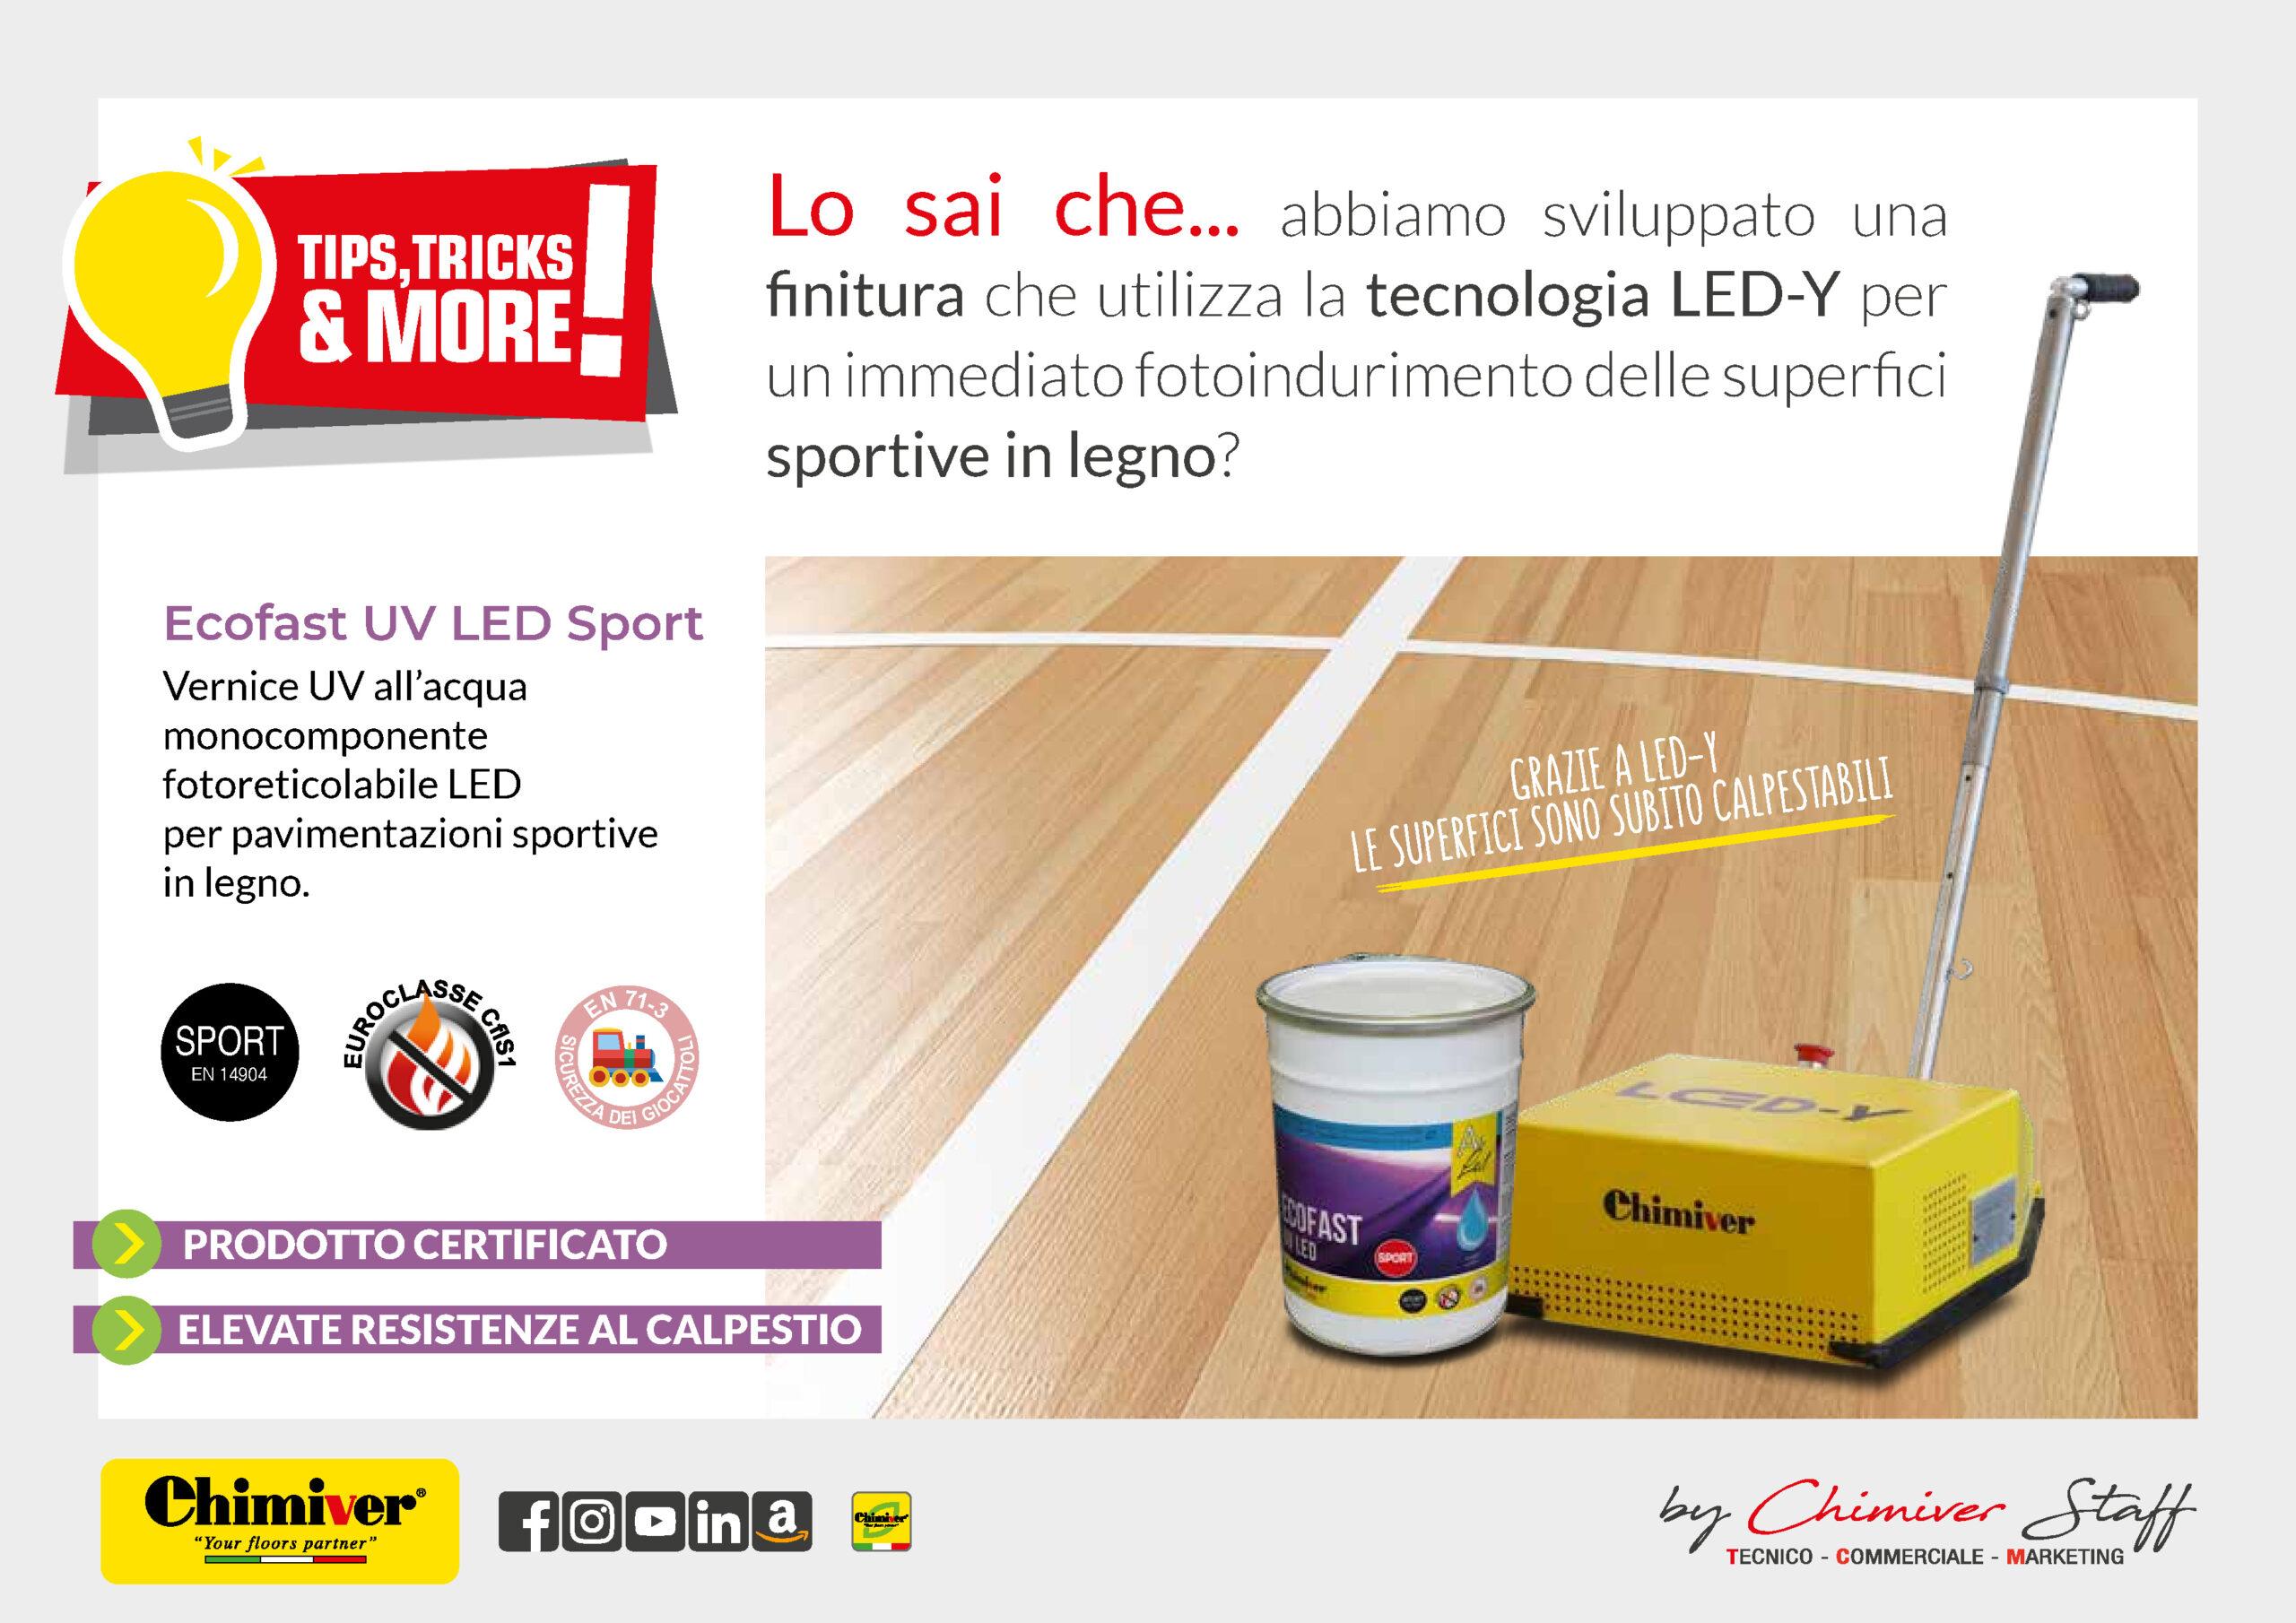 Ecofast-Uv-LED-Sport-Vernice-Acqua-Fotoreticolabile-per-Verniciare-Pavimenti-in-Legno-Sportivi-Parquet-Palestre-Prodotto-Professionale-Certificato-Professionisti-Chimiver